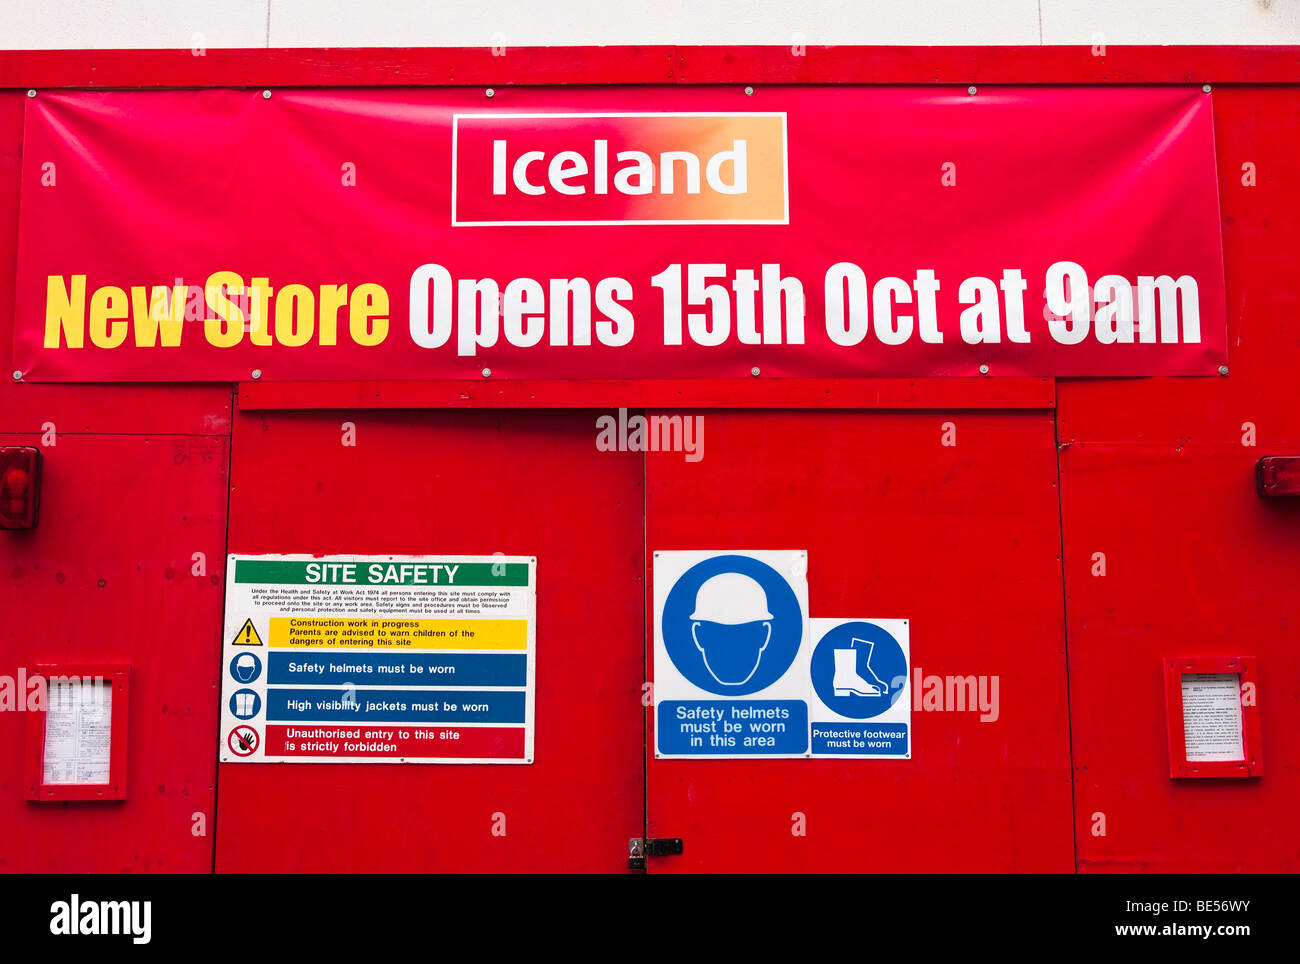 Erweiterung der Island-Kette des Einzelhandels speichert signalisiert das Ende einer Rezession im September 2009 Stockfoto